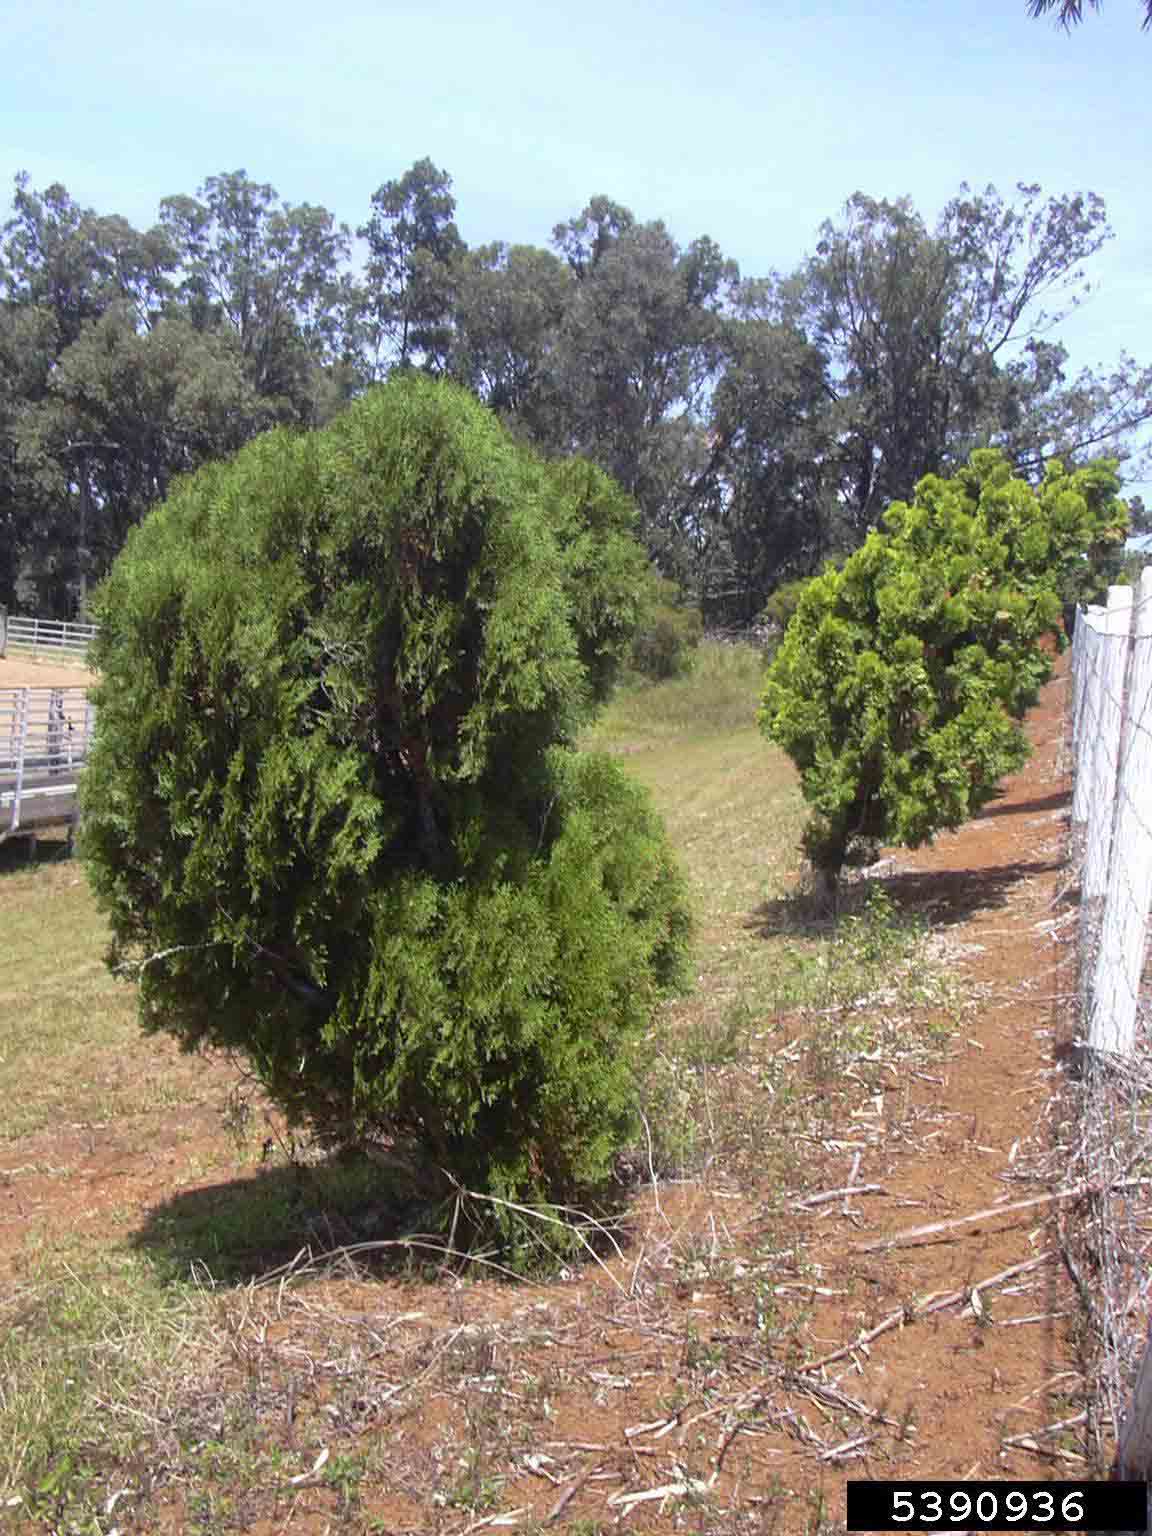 Eastern arborvitae trees